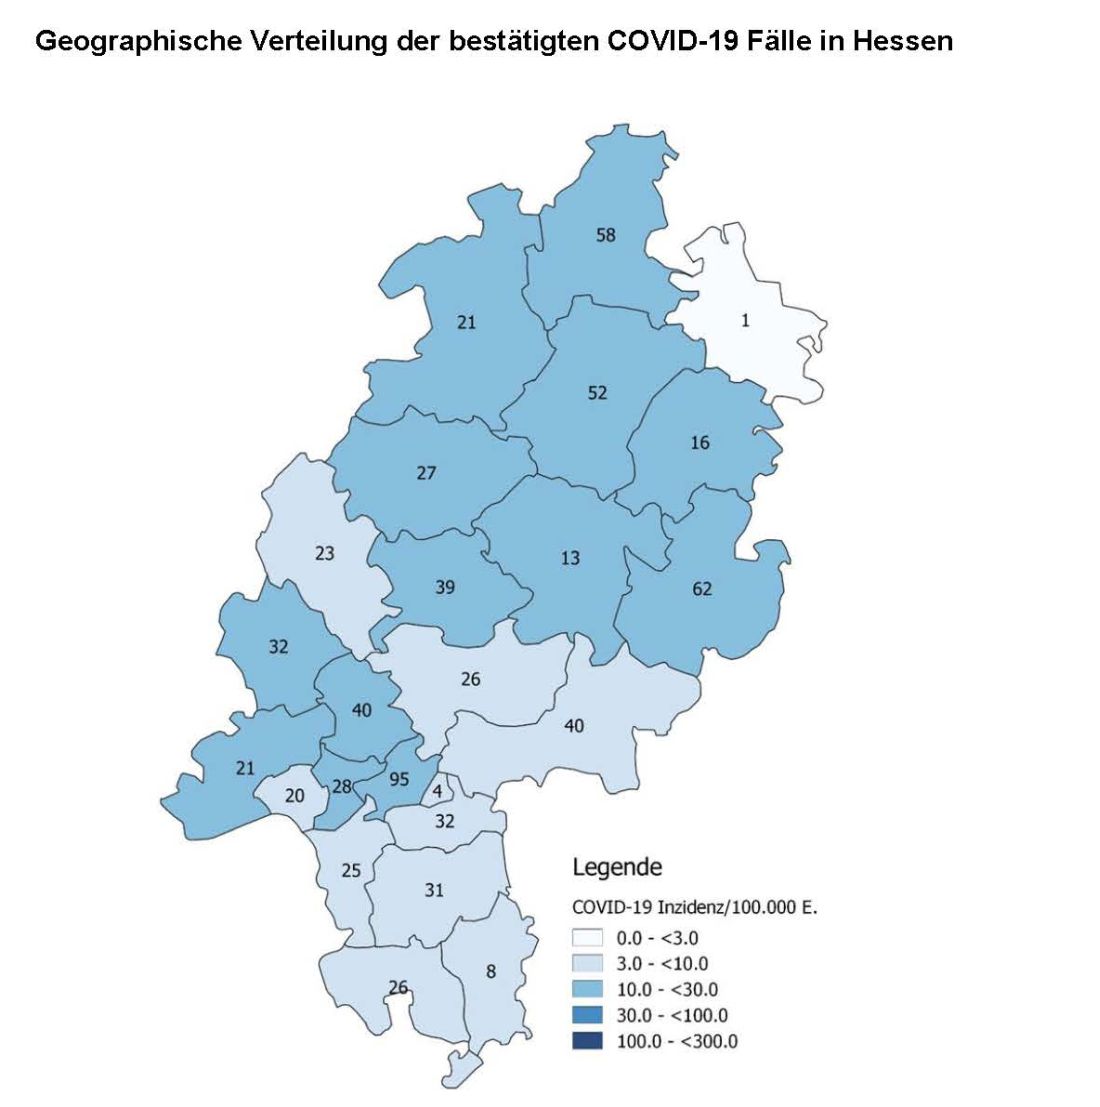 Geographische Verteilung der bestätigten COVID-19 Fälle in Hessen